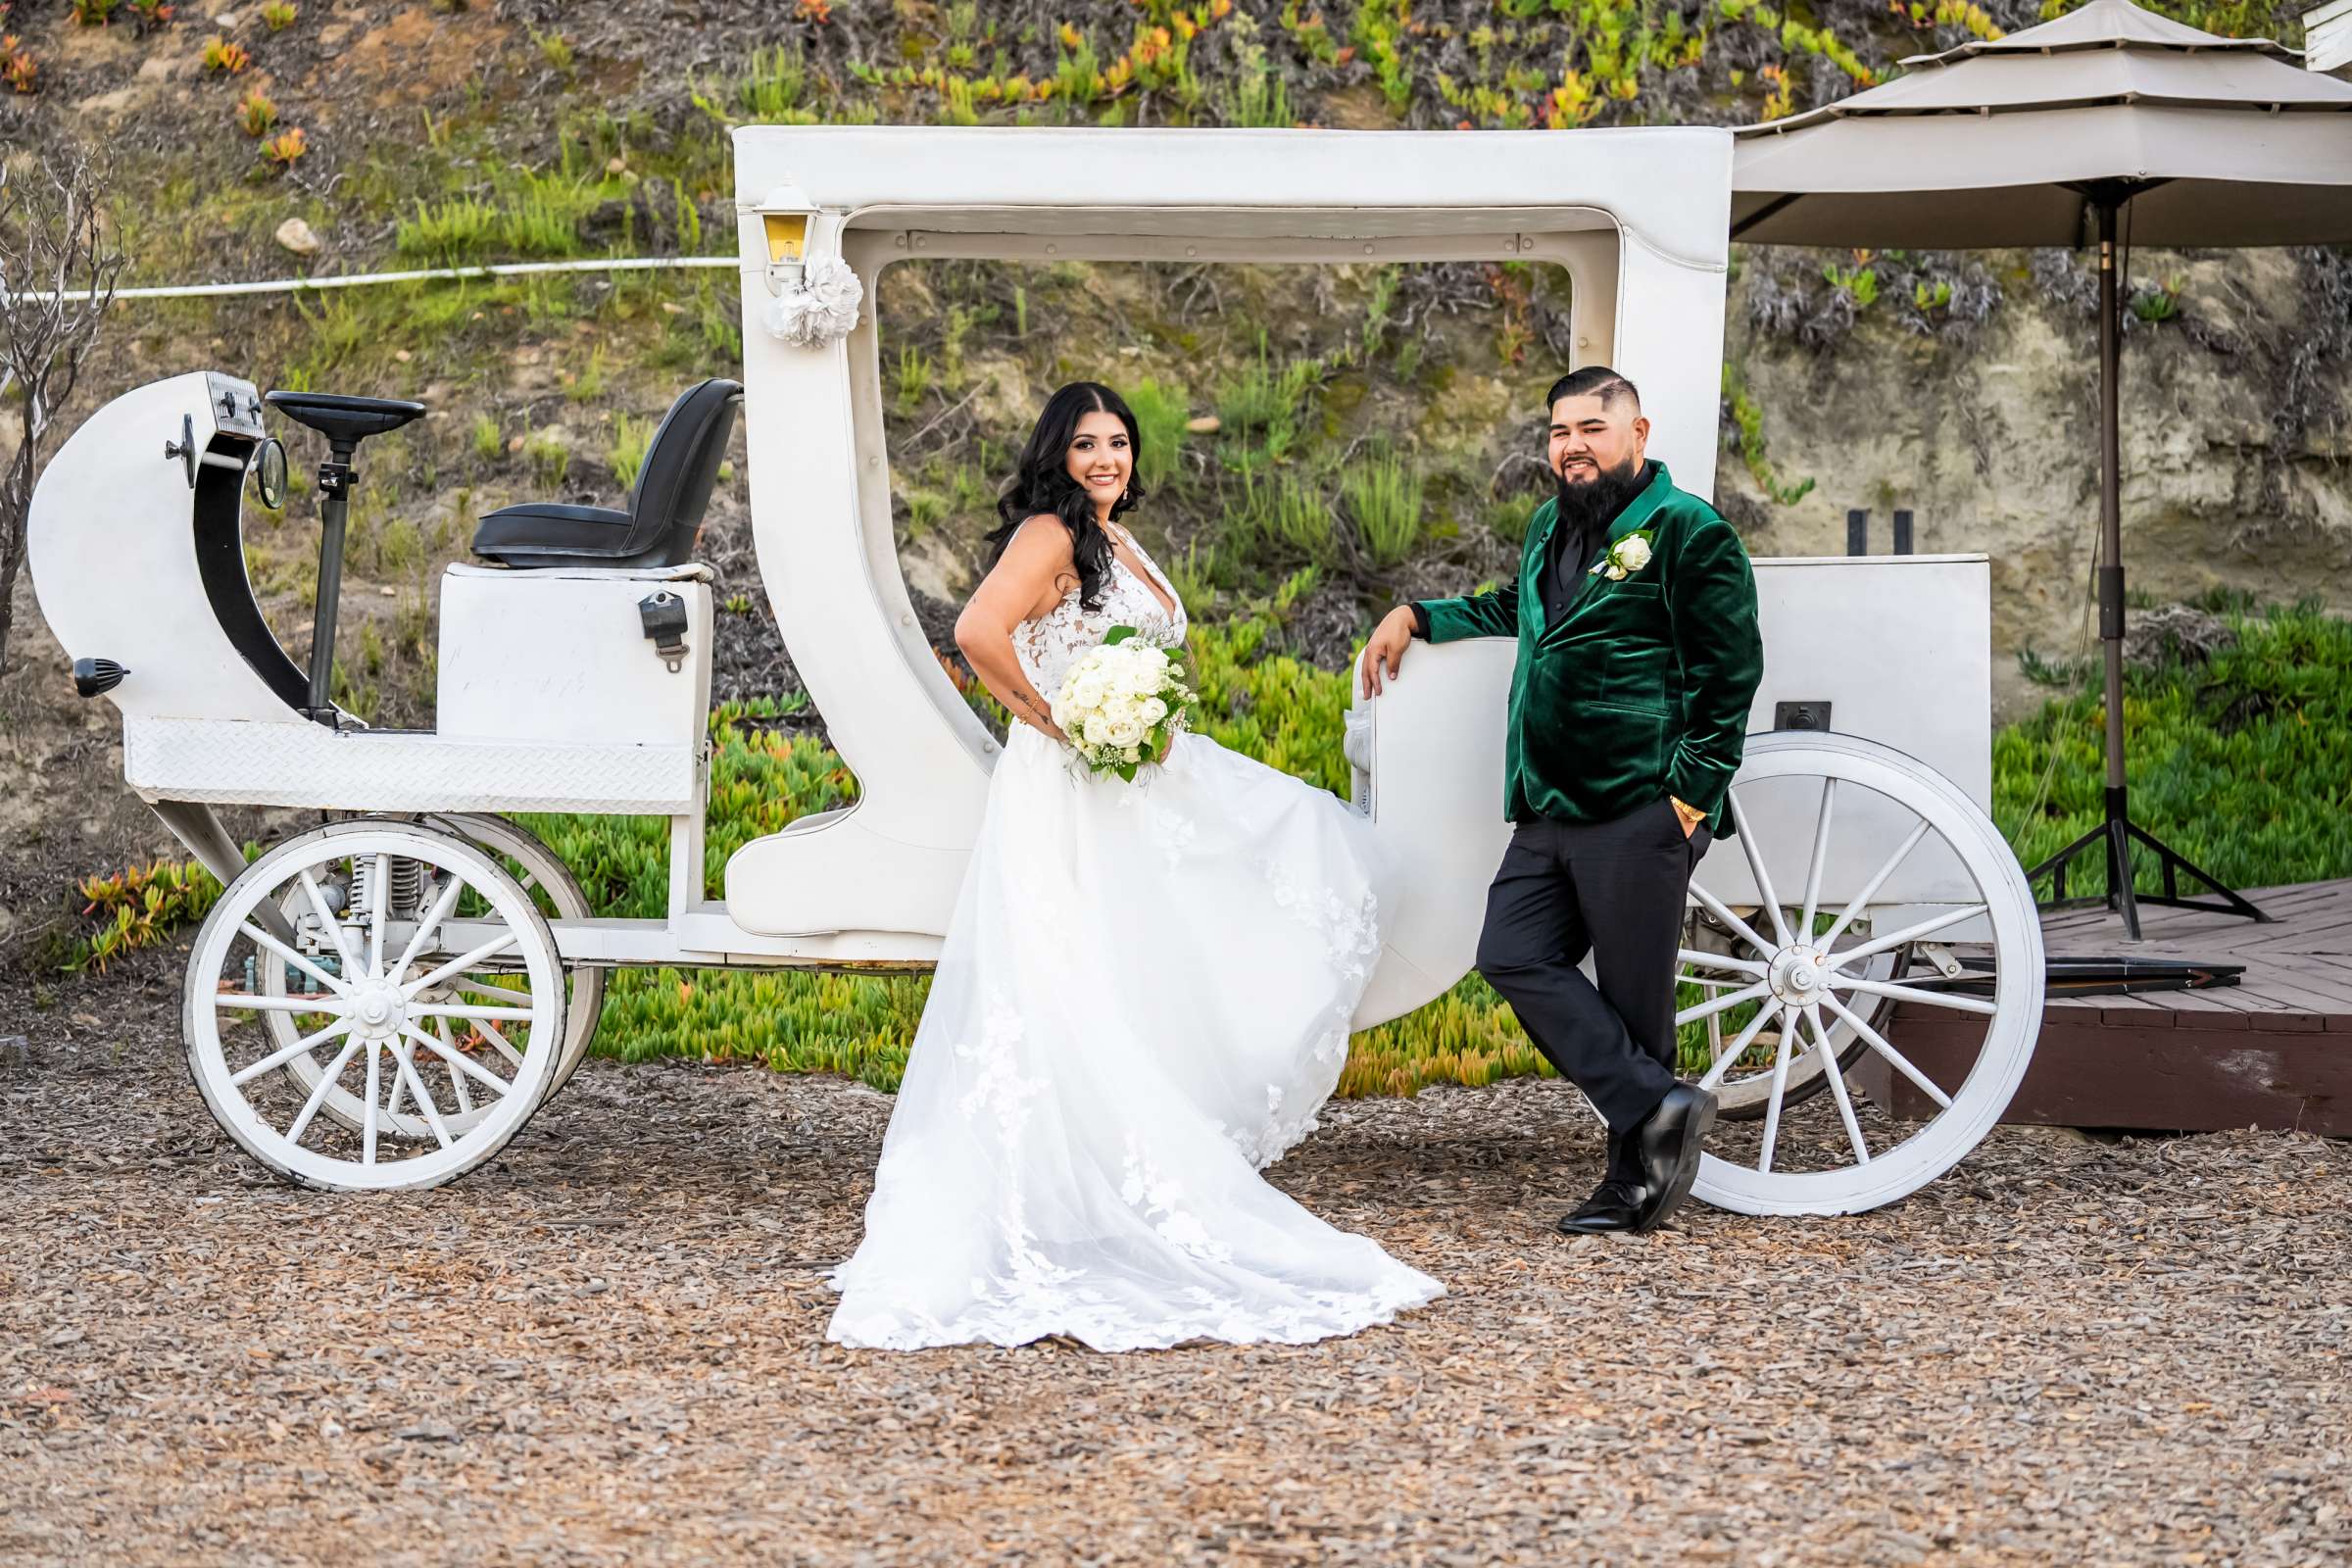 La Hacienda Wedding, Ashley and Alvaro Wedding Photo #1 by True Photography